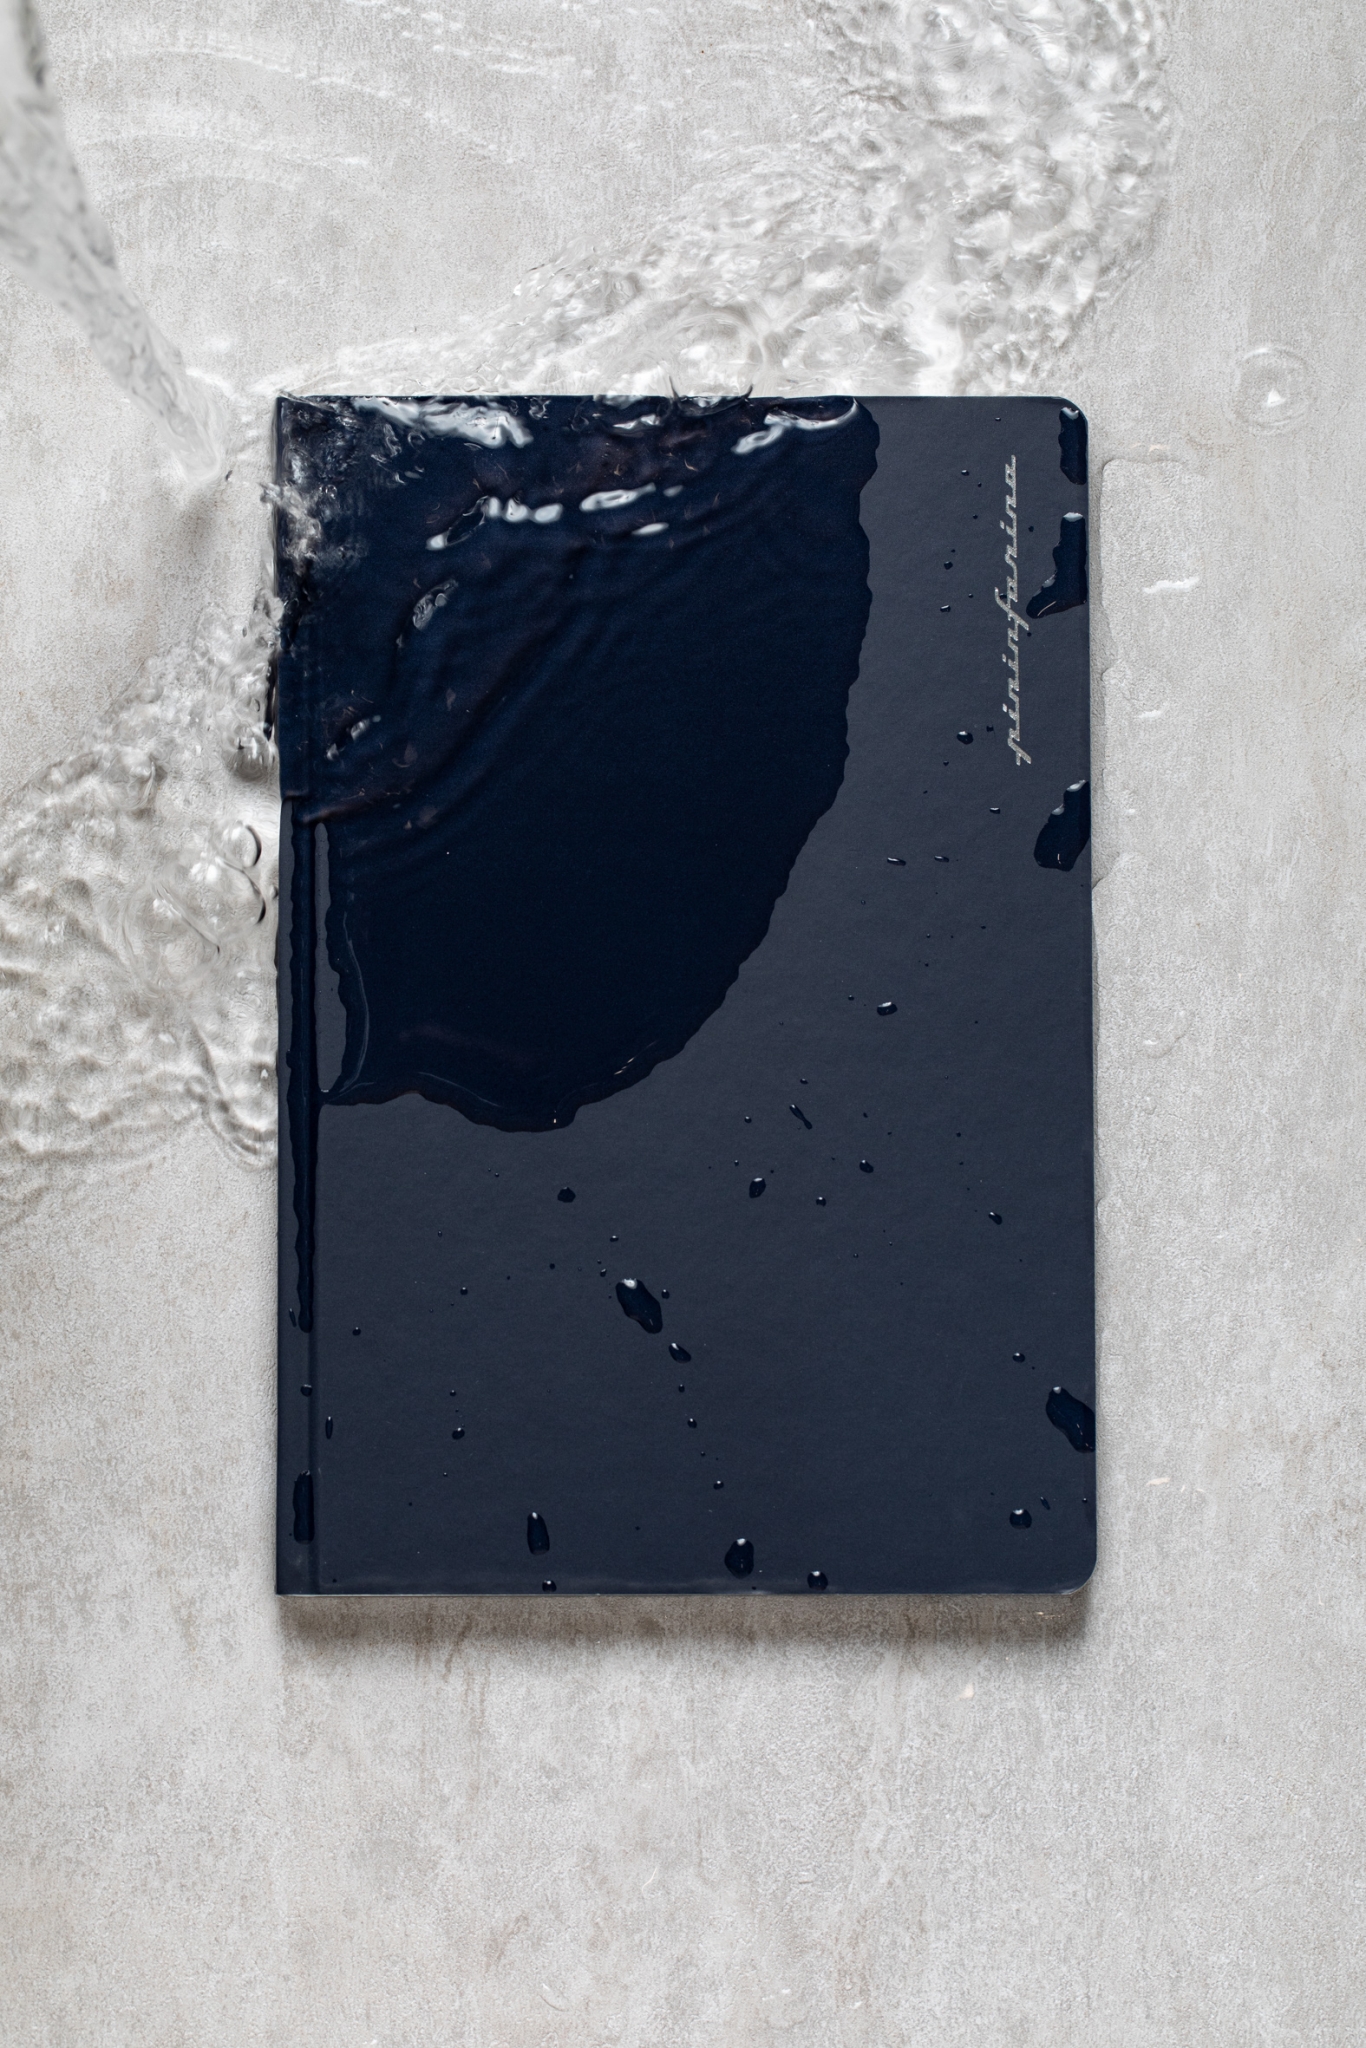 Тетрадь Pininfarina Stone Paper черная 14х21см каменная бумага, 64 листа, точки, #000000, каменная бумага